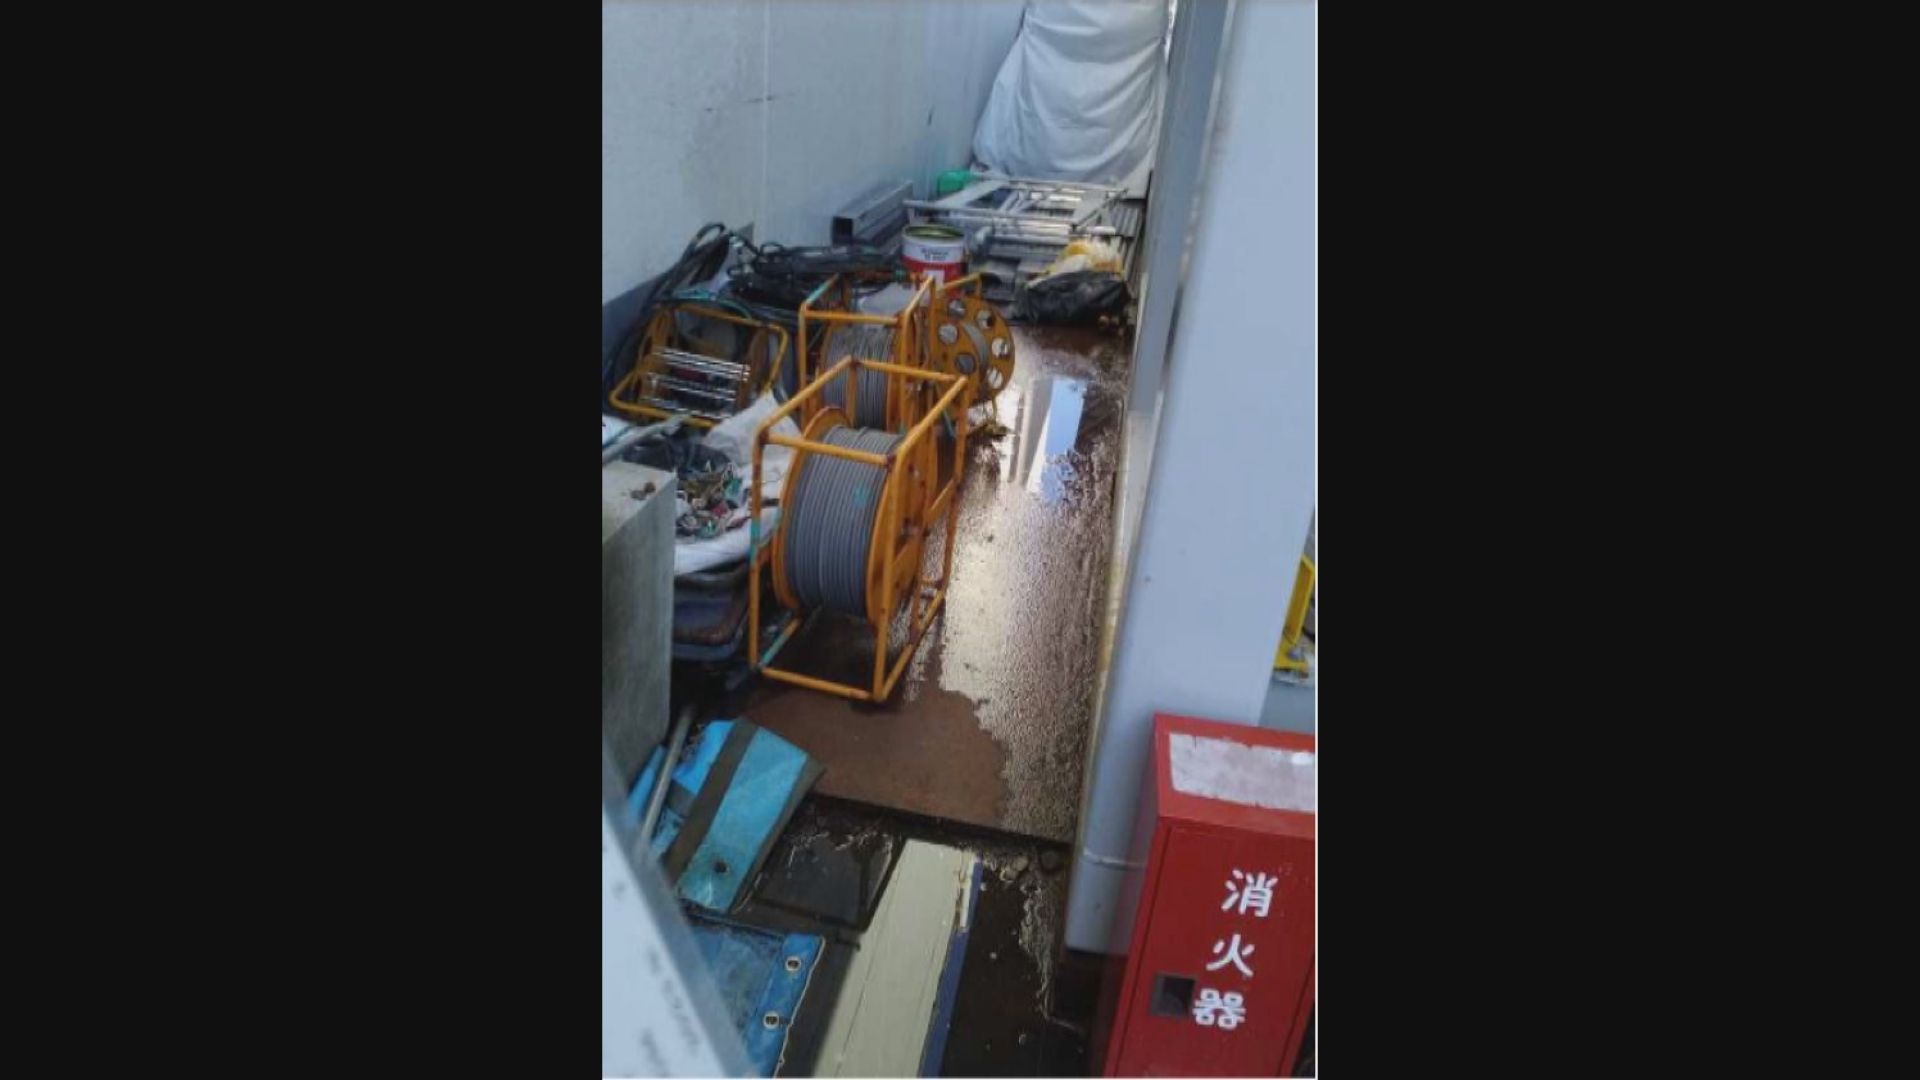 日本福島核電廠洩漏核污水 中國駐日使館批評日本政府監督不力